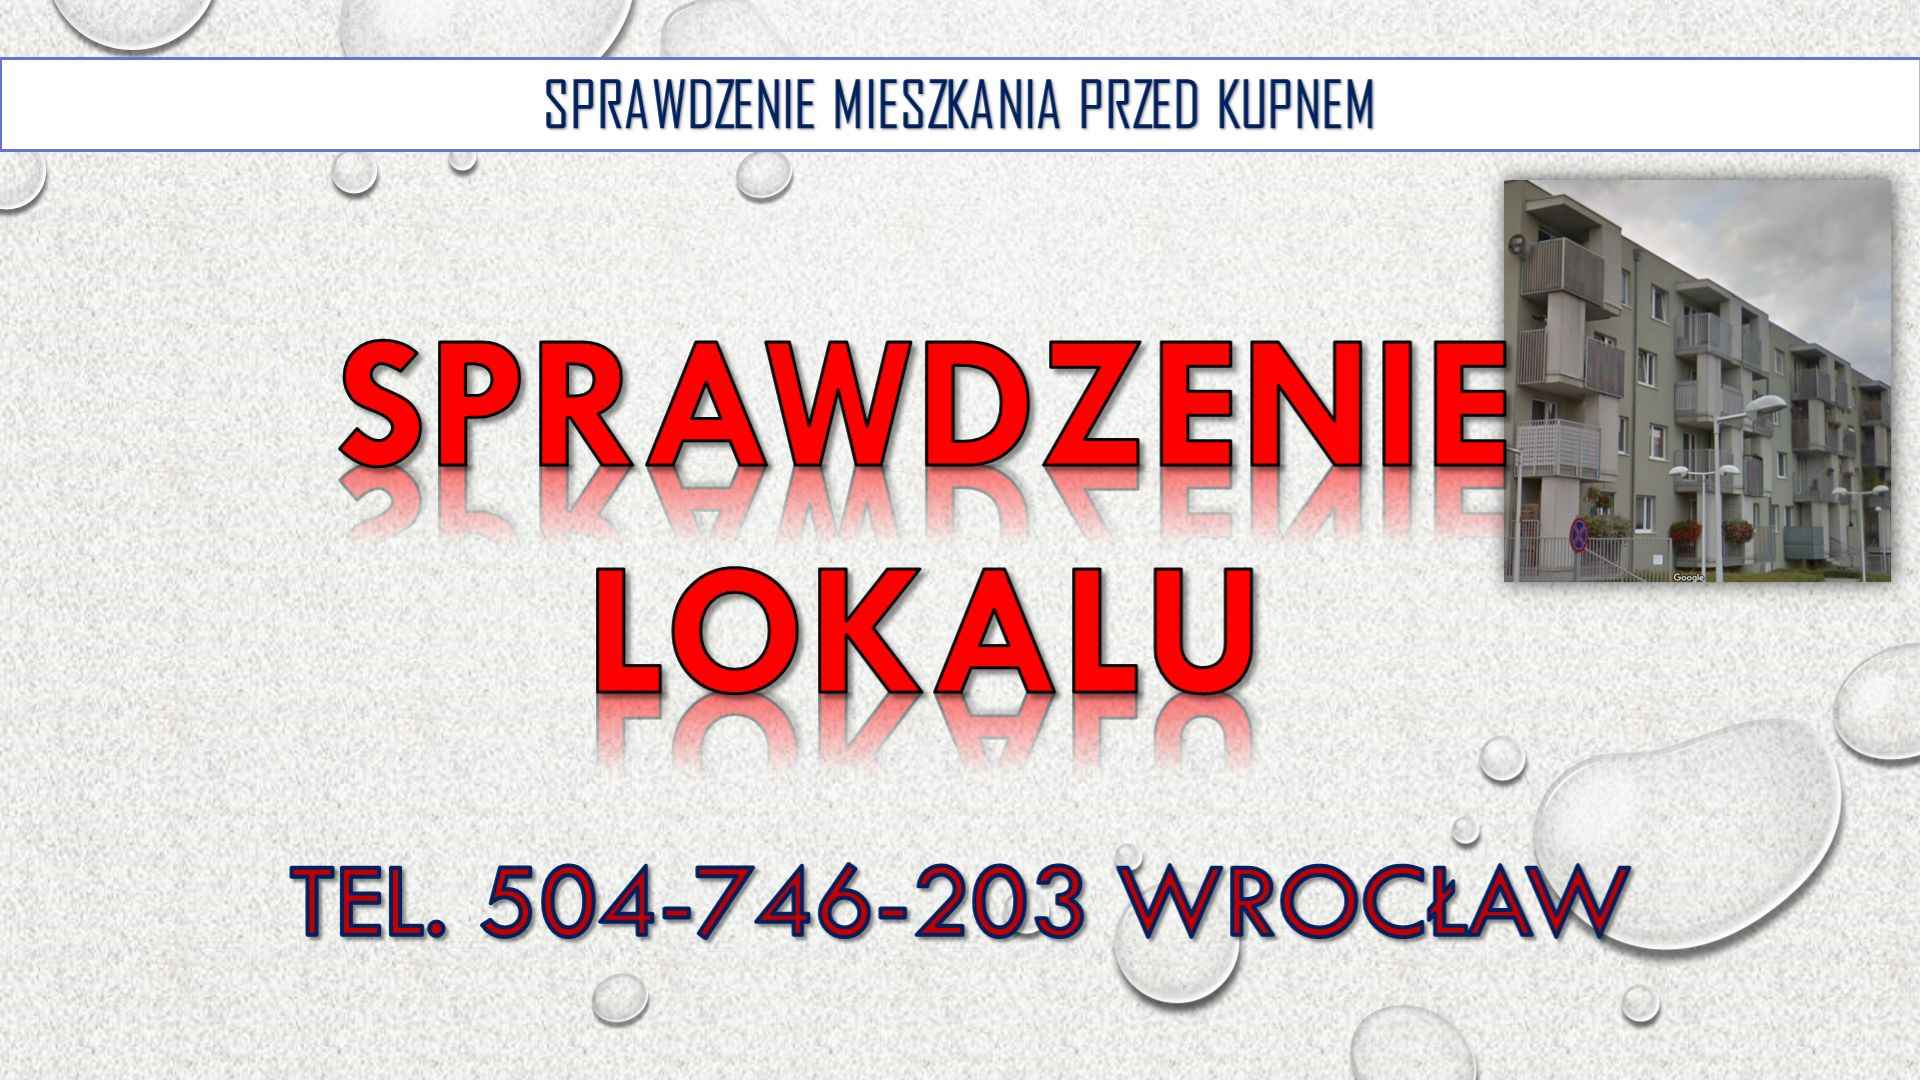 Odbiory mieszkań, Wrocław, cena, t.504746203. Sprawdzenie mieszkania Psie Pole - zdjęcie 2